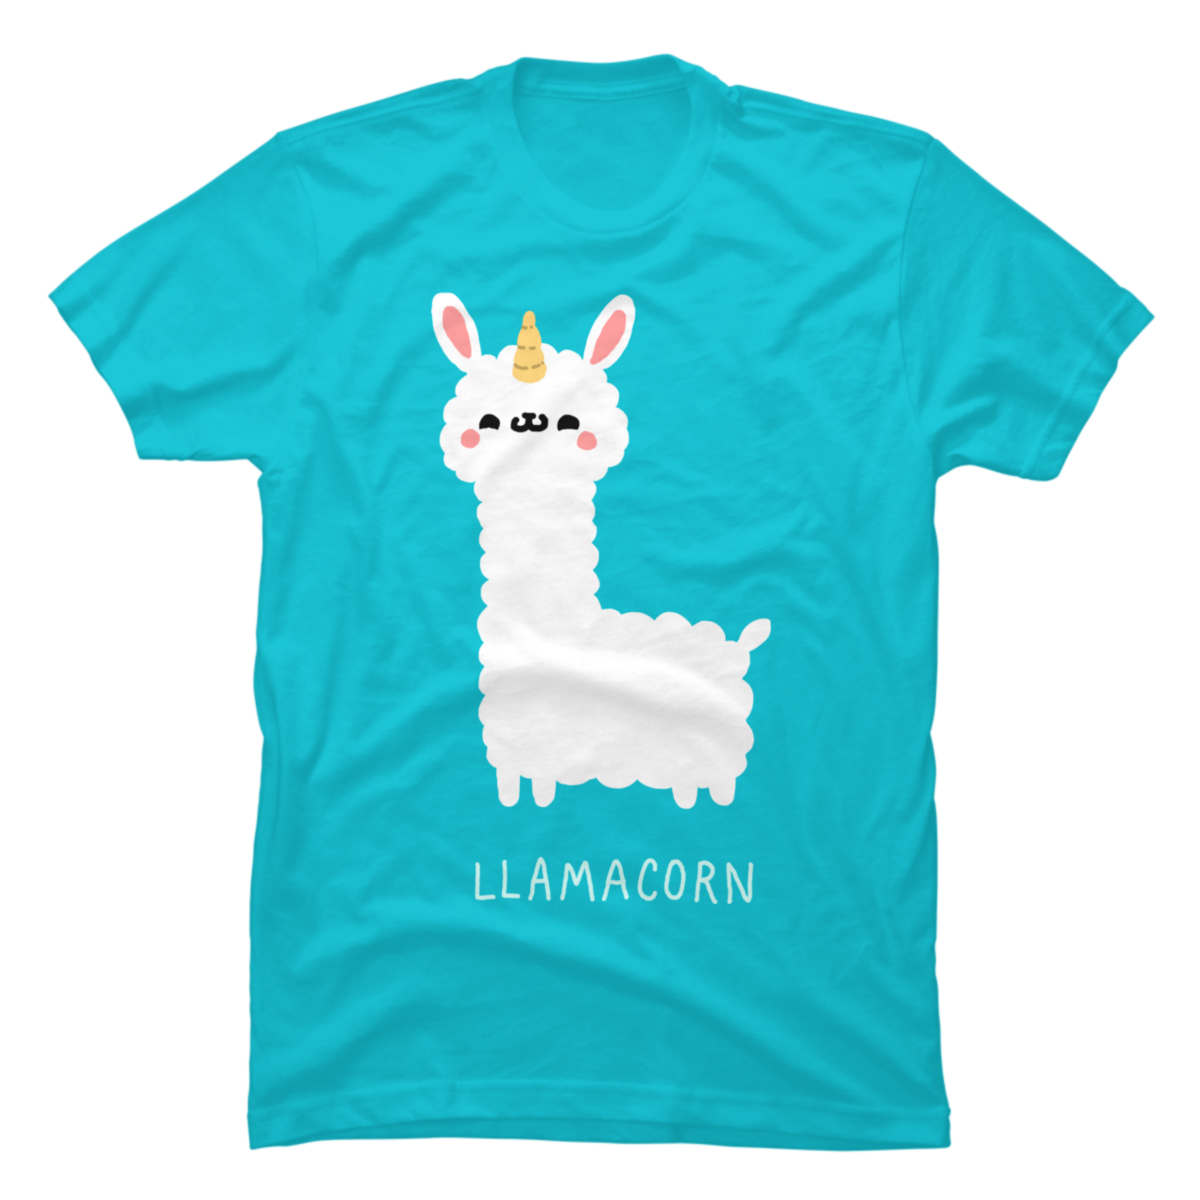 llamacorn t shirt